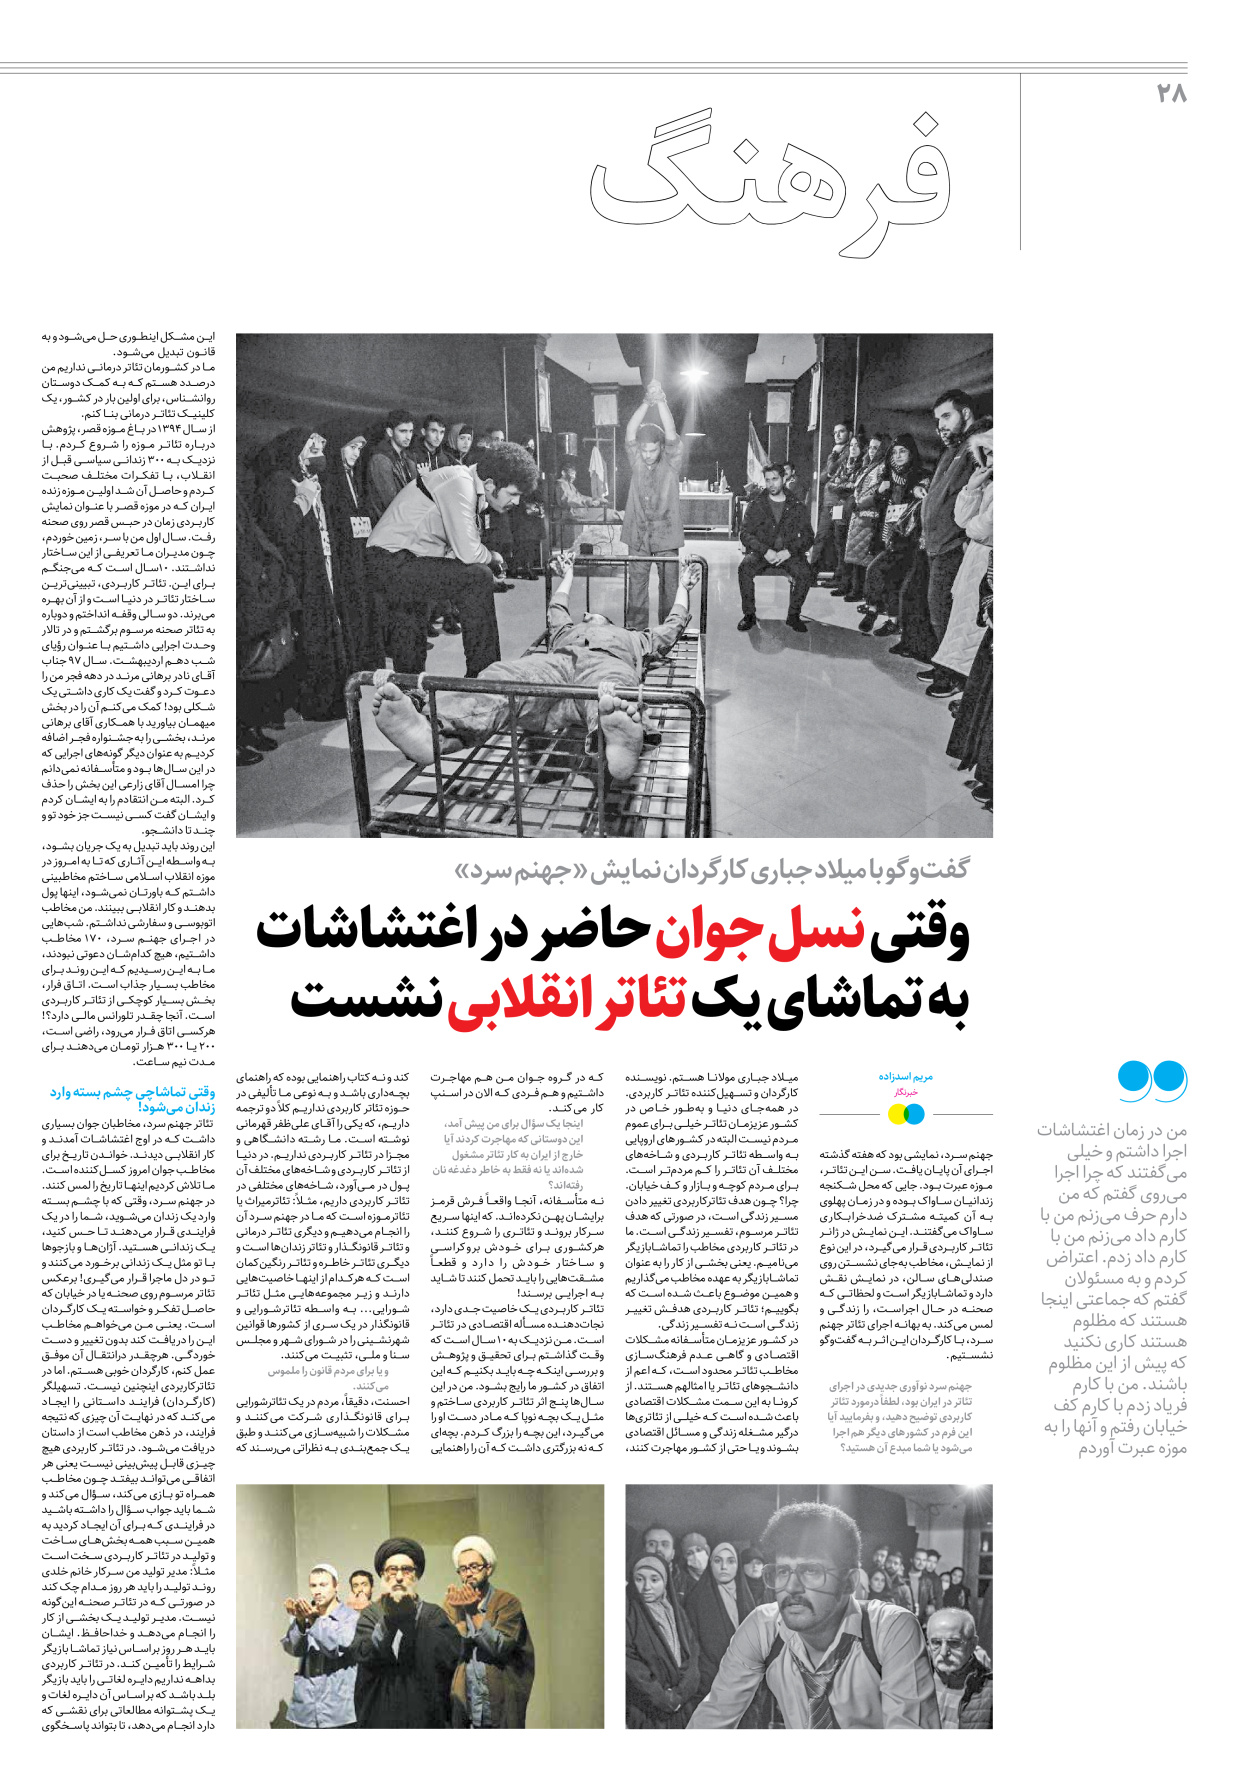 روزنامه ایران - ویژه نامه جمعه۲۲ - ۲۵ اسفند ۱۴۰۱ - صفحه ۲۸